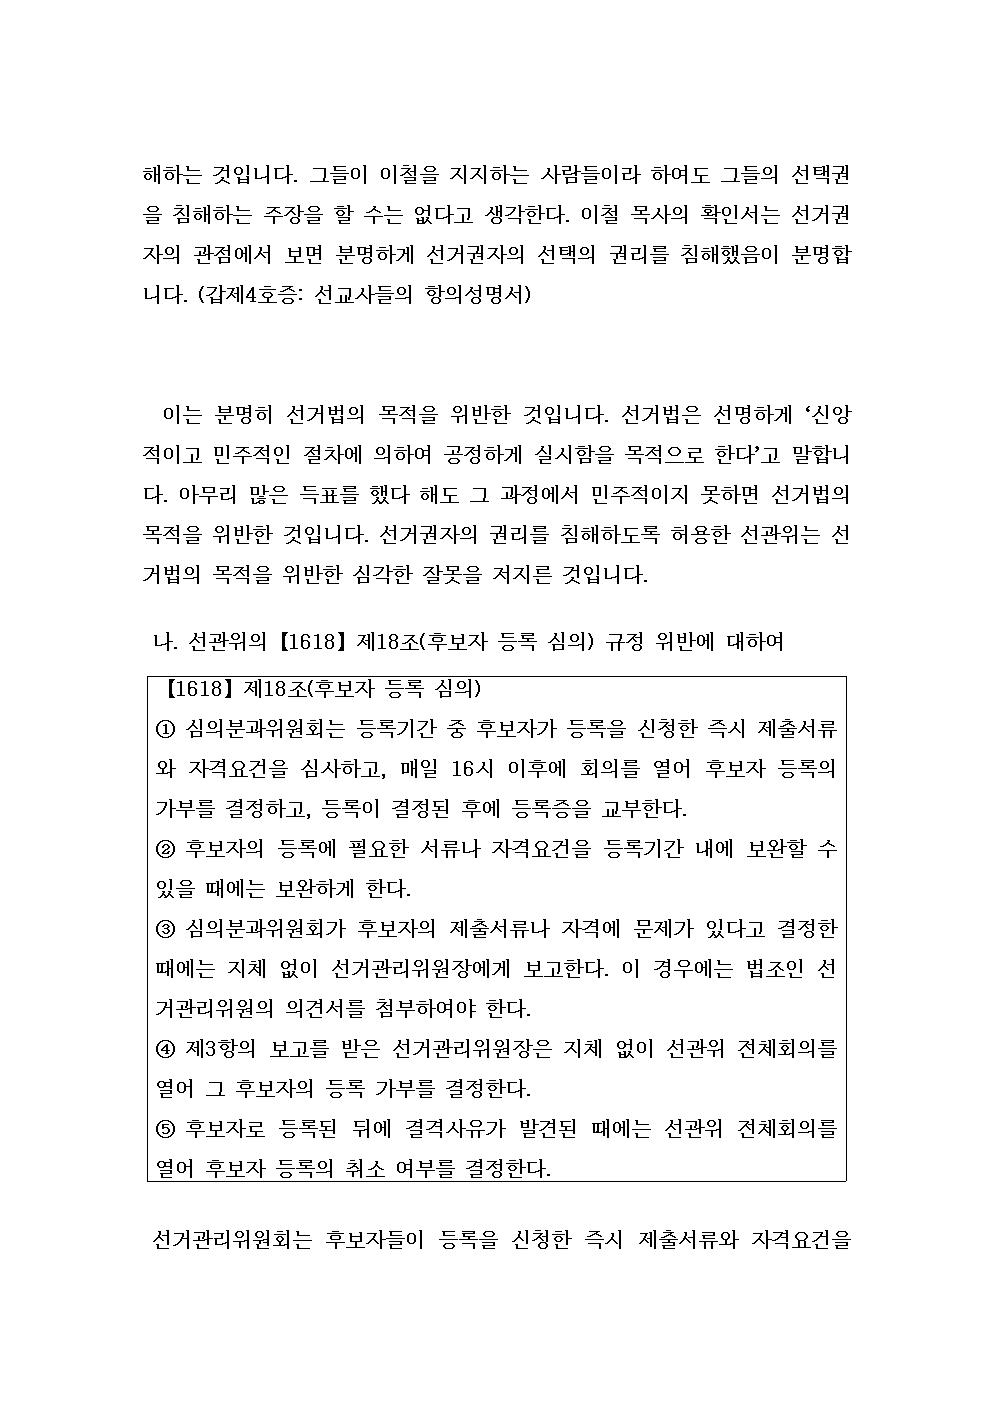 제34회 총회 감독회장선거 무효소송 고소장